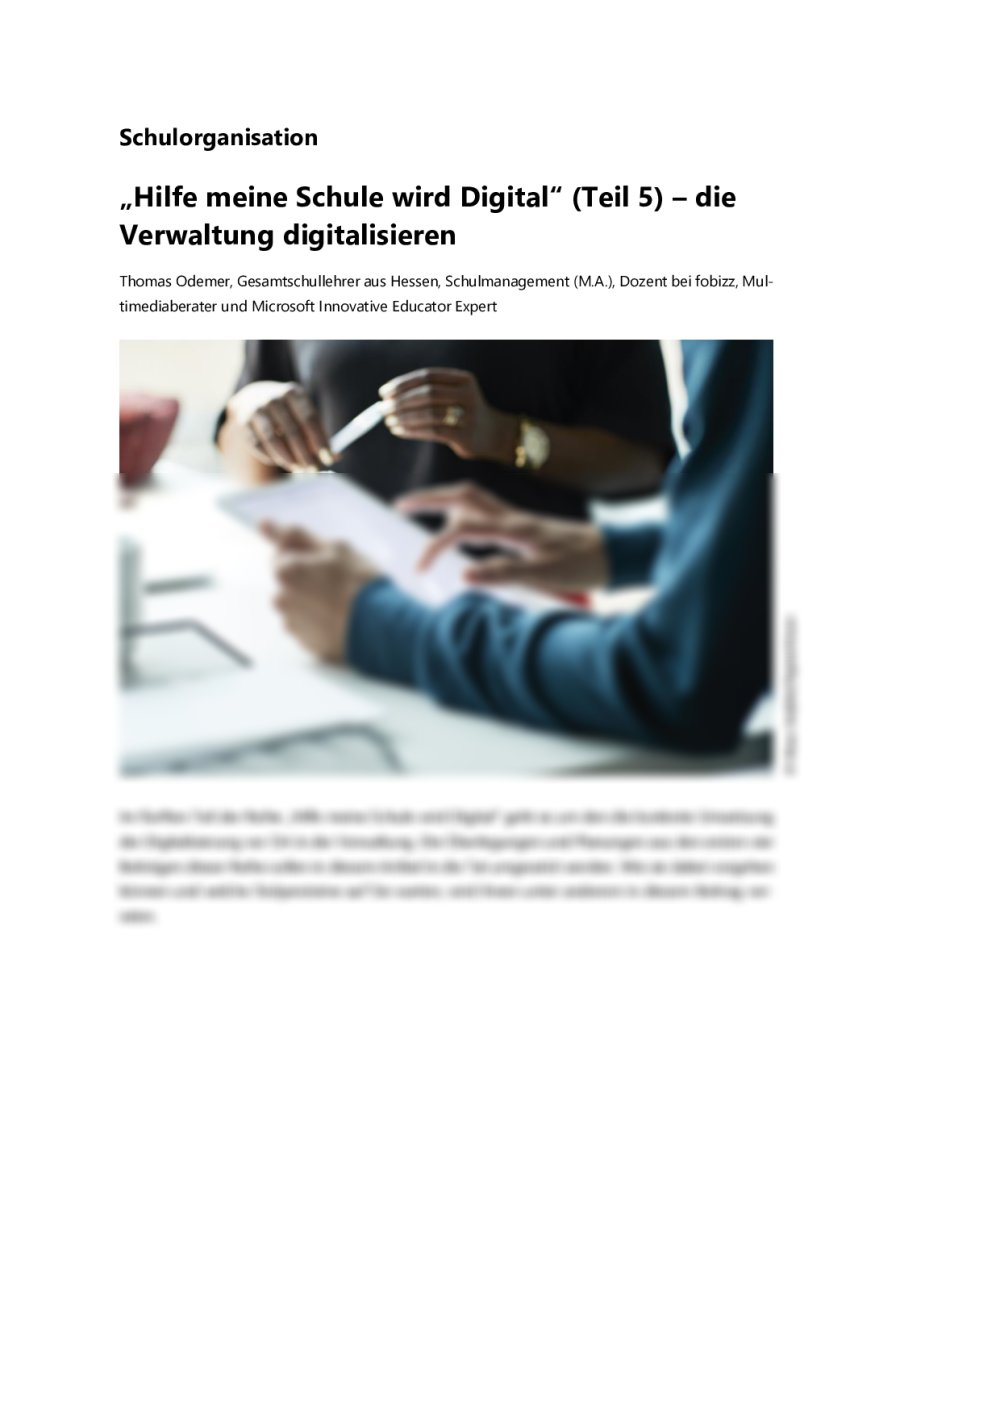 „Hilfe meine Schule wird Digital“ (Teil 5) – die Verwaltung digitalisieren - Seite 1